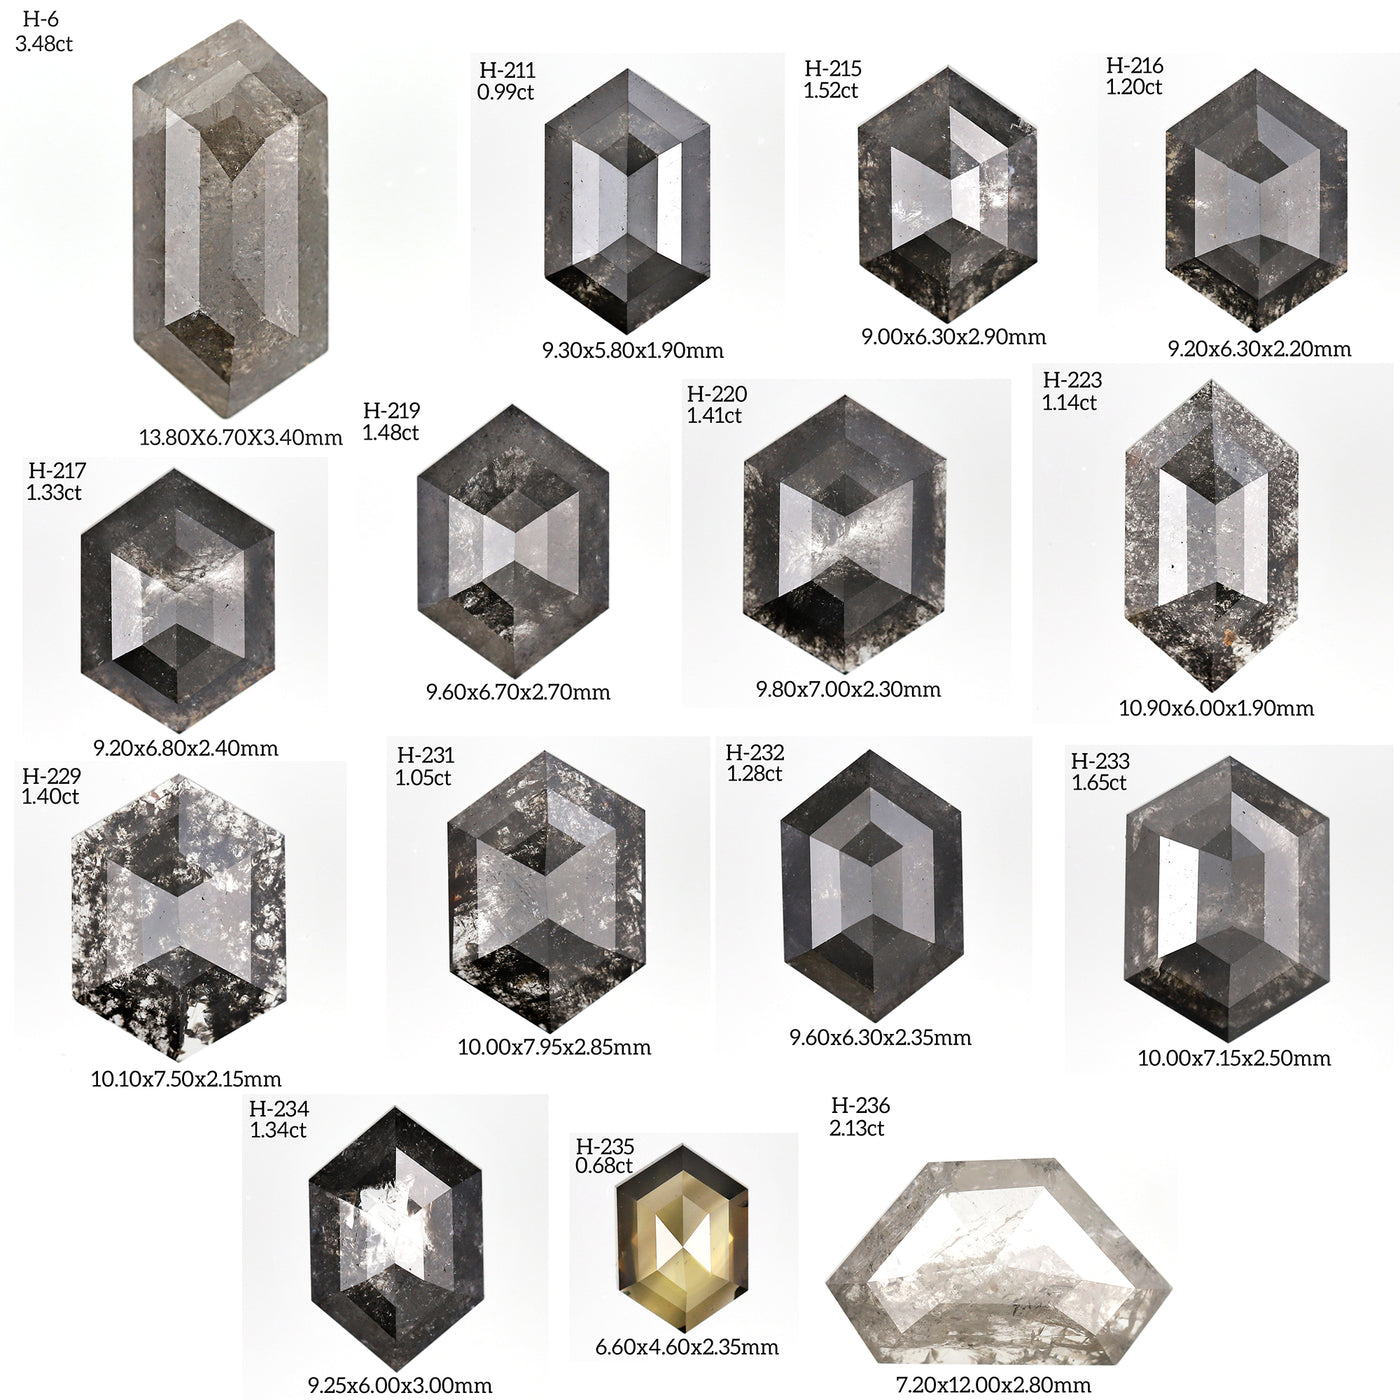 H246 - Salt and pepper hexagon diamond